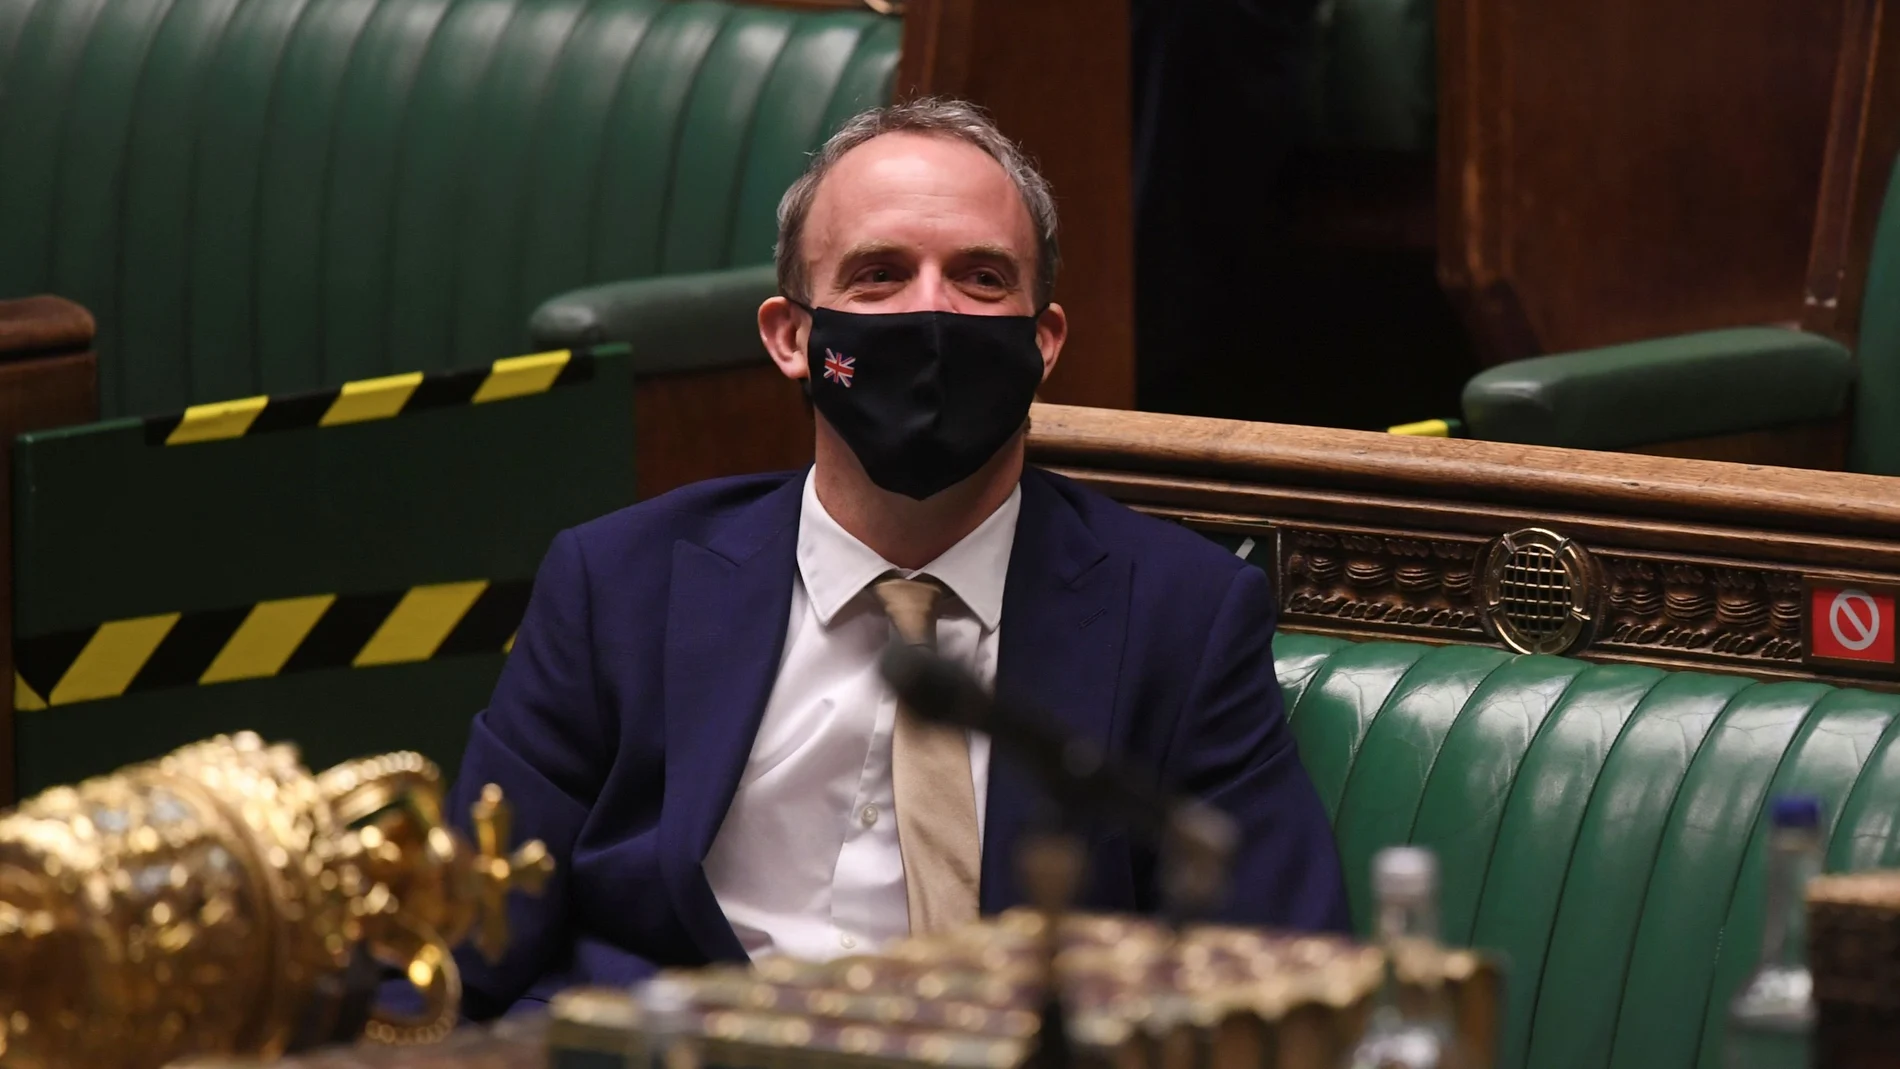 Dominic Raab, ayer en una sesión del parlamento en la Cámara de los Comunes en Londres